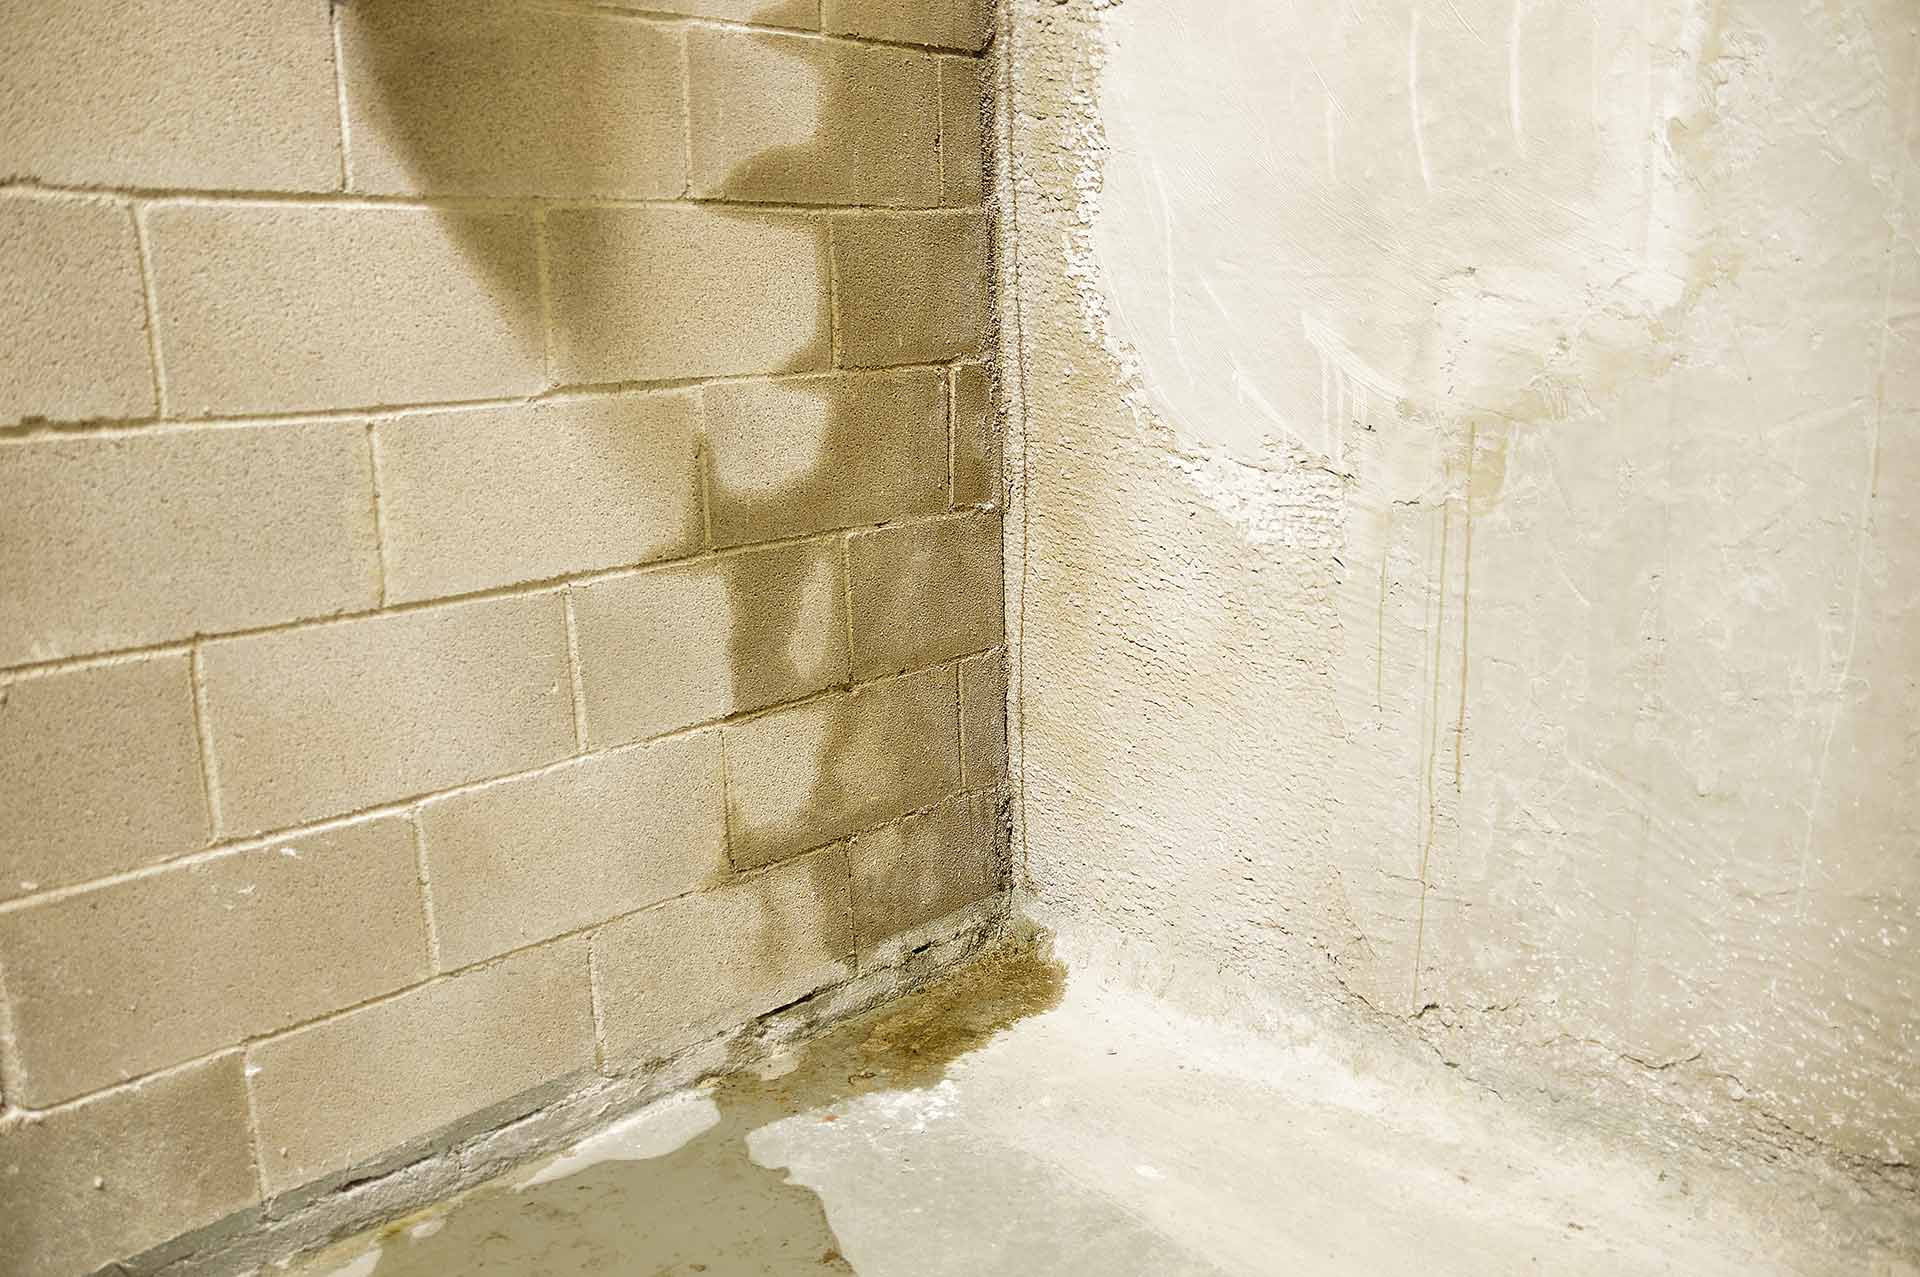 wet basement wall corner